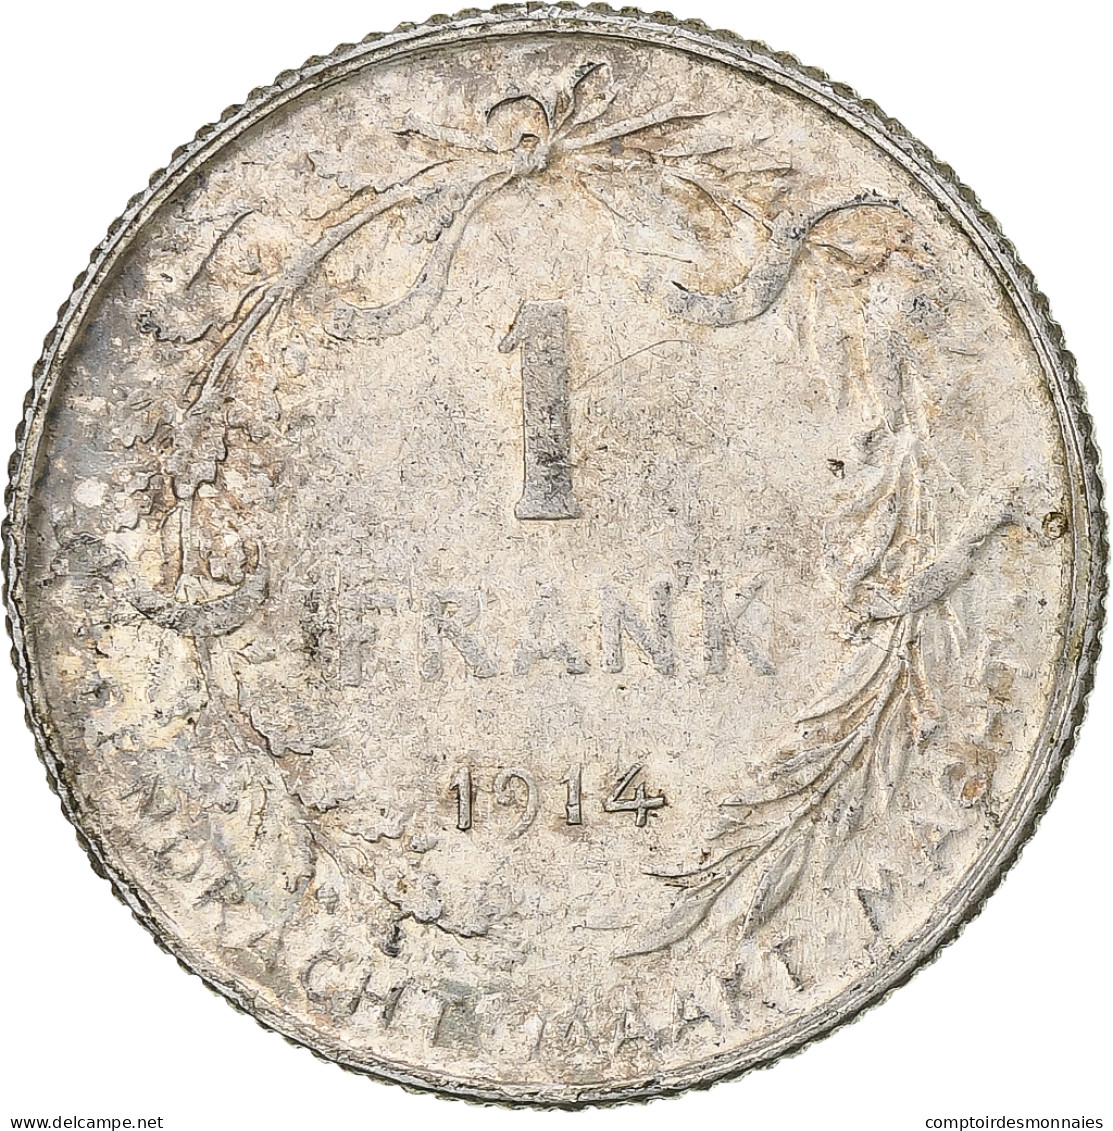 Monnaie, Belgique, Franc, 1914, TB+, Argent, KM:73.1 - 1 Frank